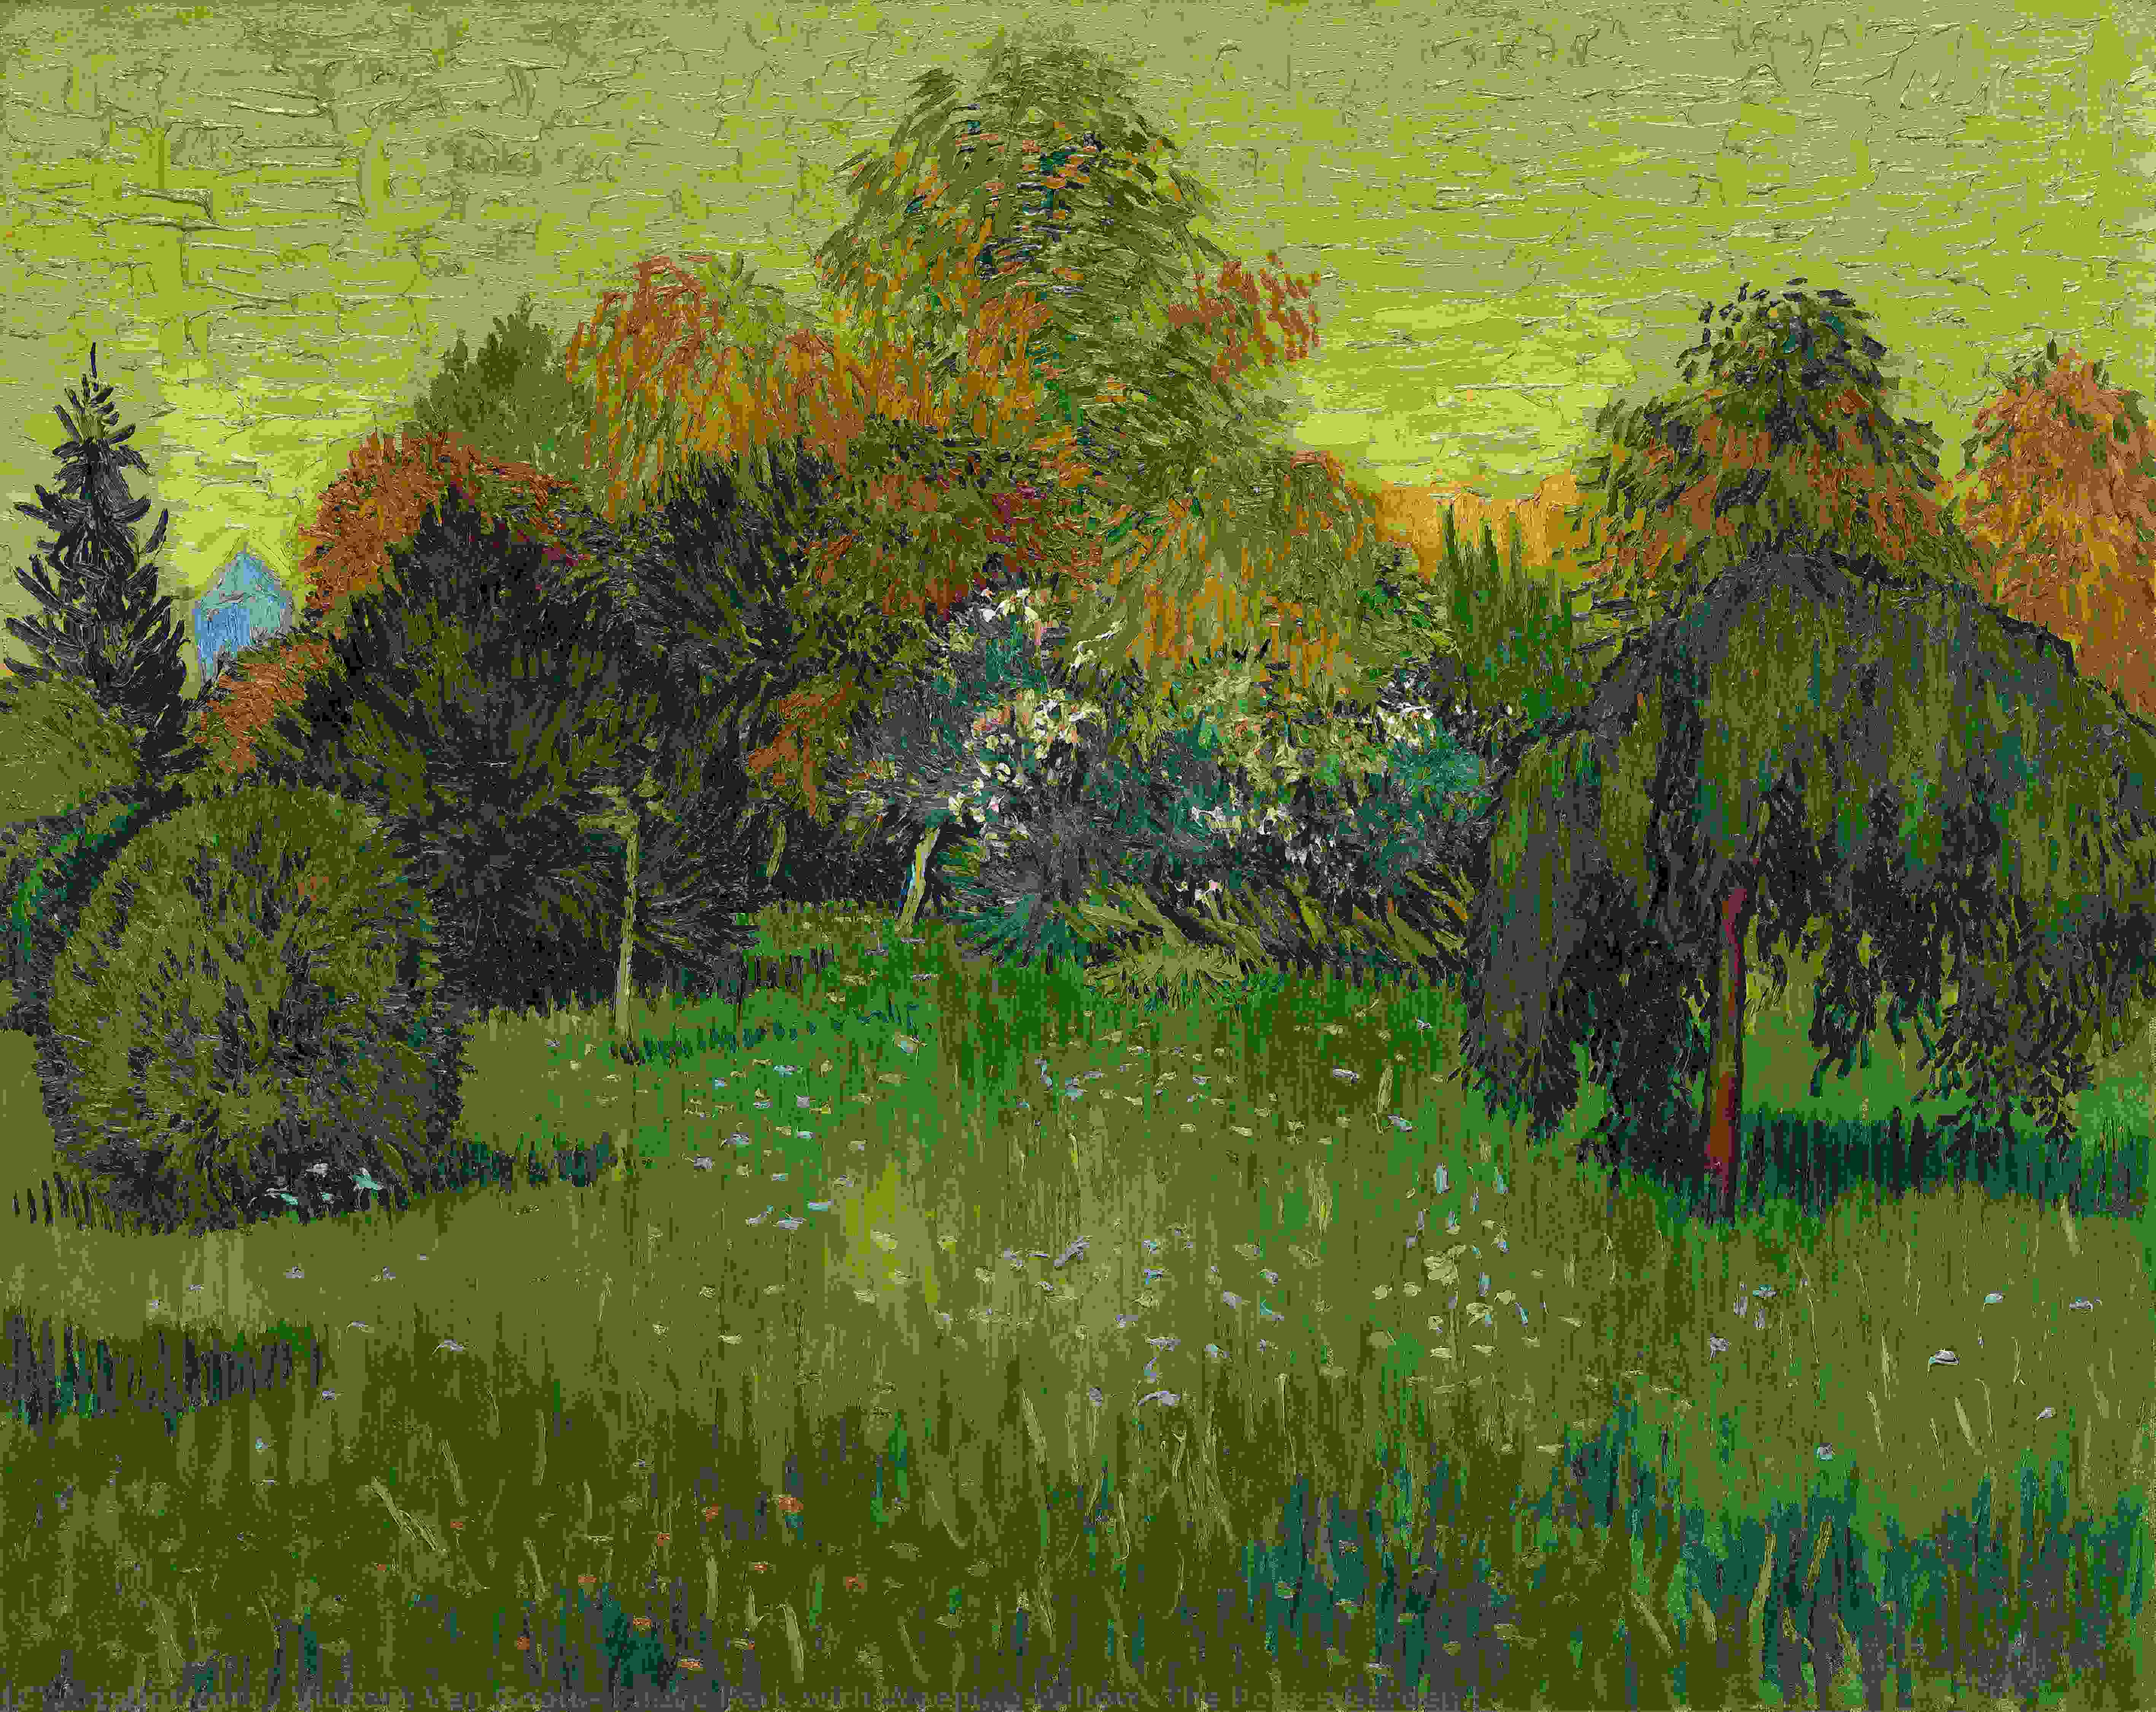 Achat Réplique De Peinture Parc public avec Willow pleureur: Le Jardin du Poet I, 1888 de Vincent Van Gogh (1853-1890, Netherlands) | ArtsDot.com